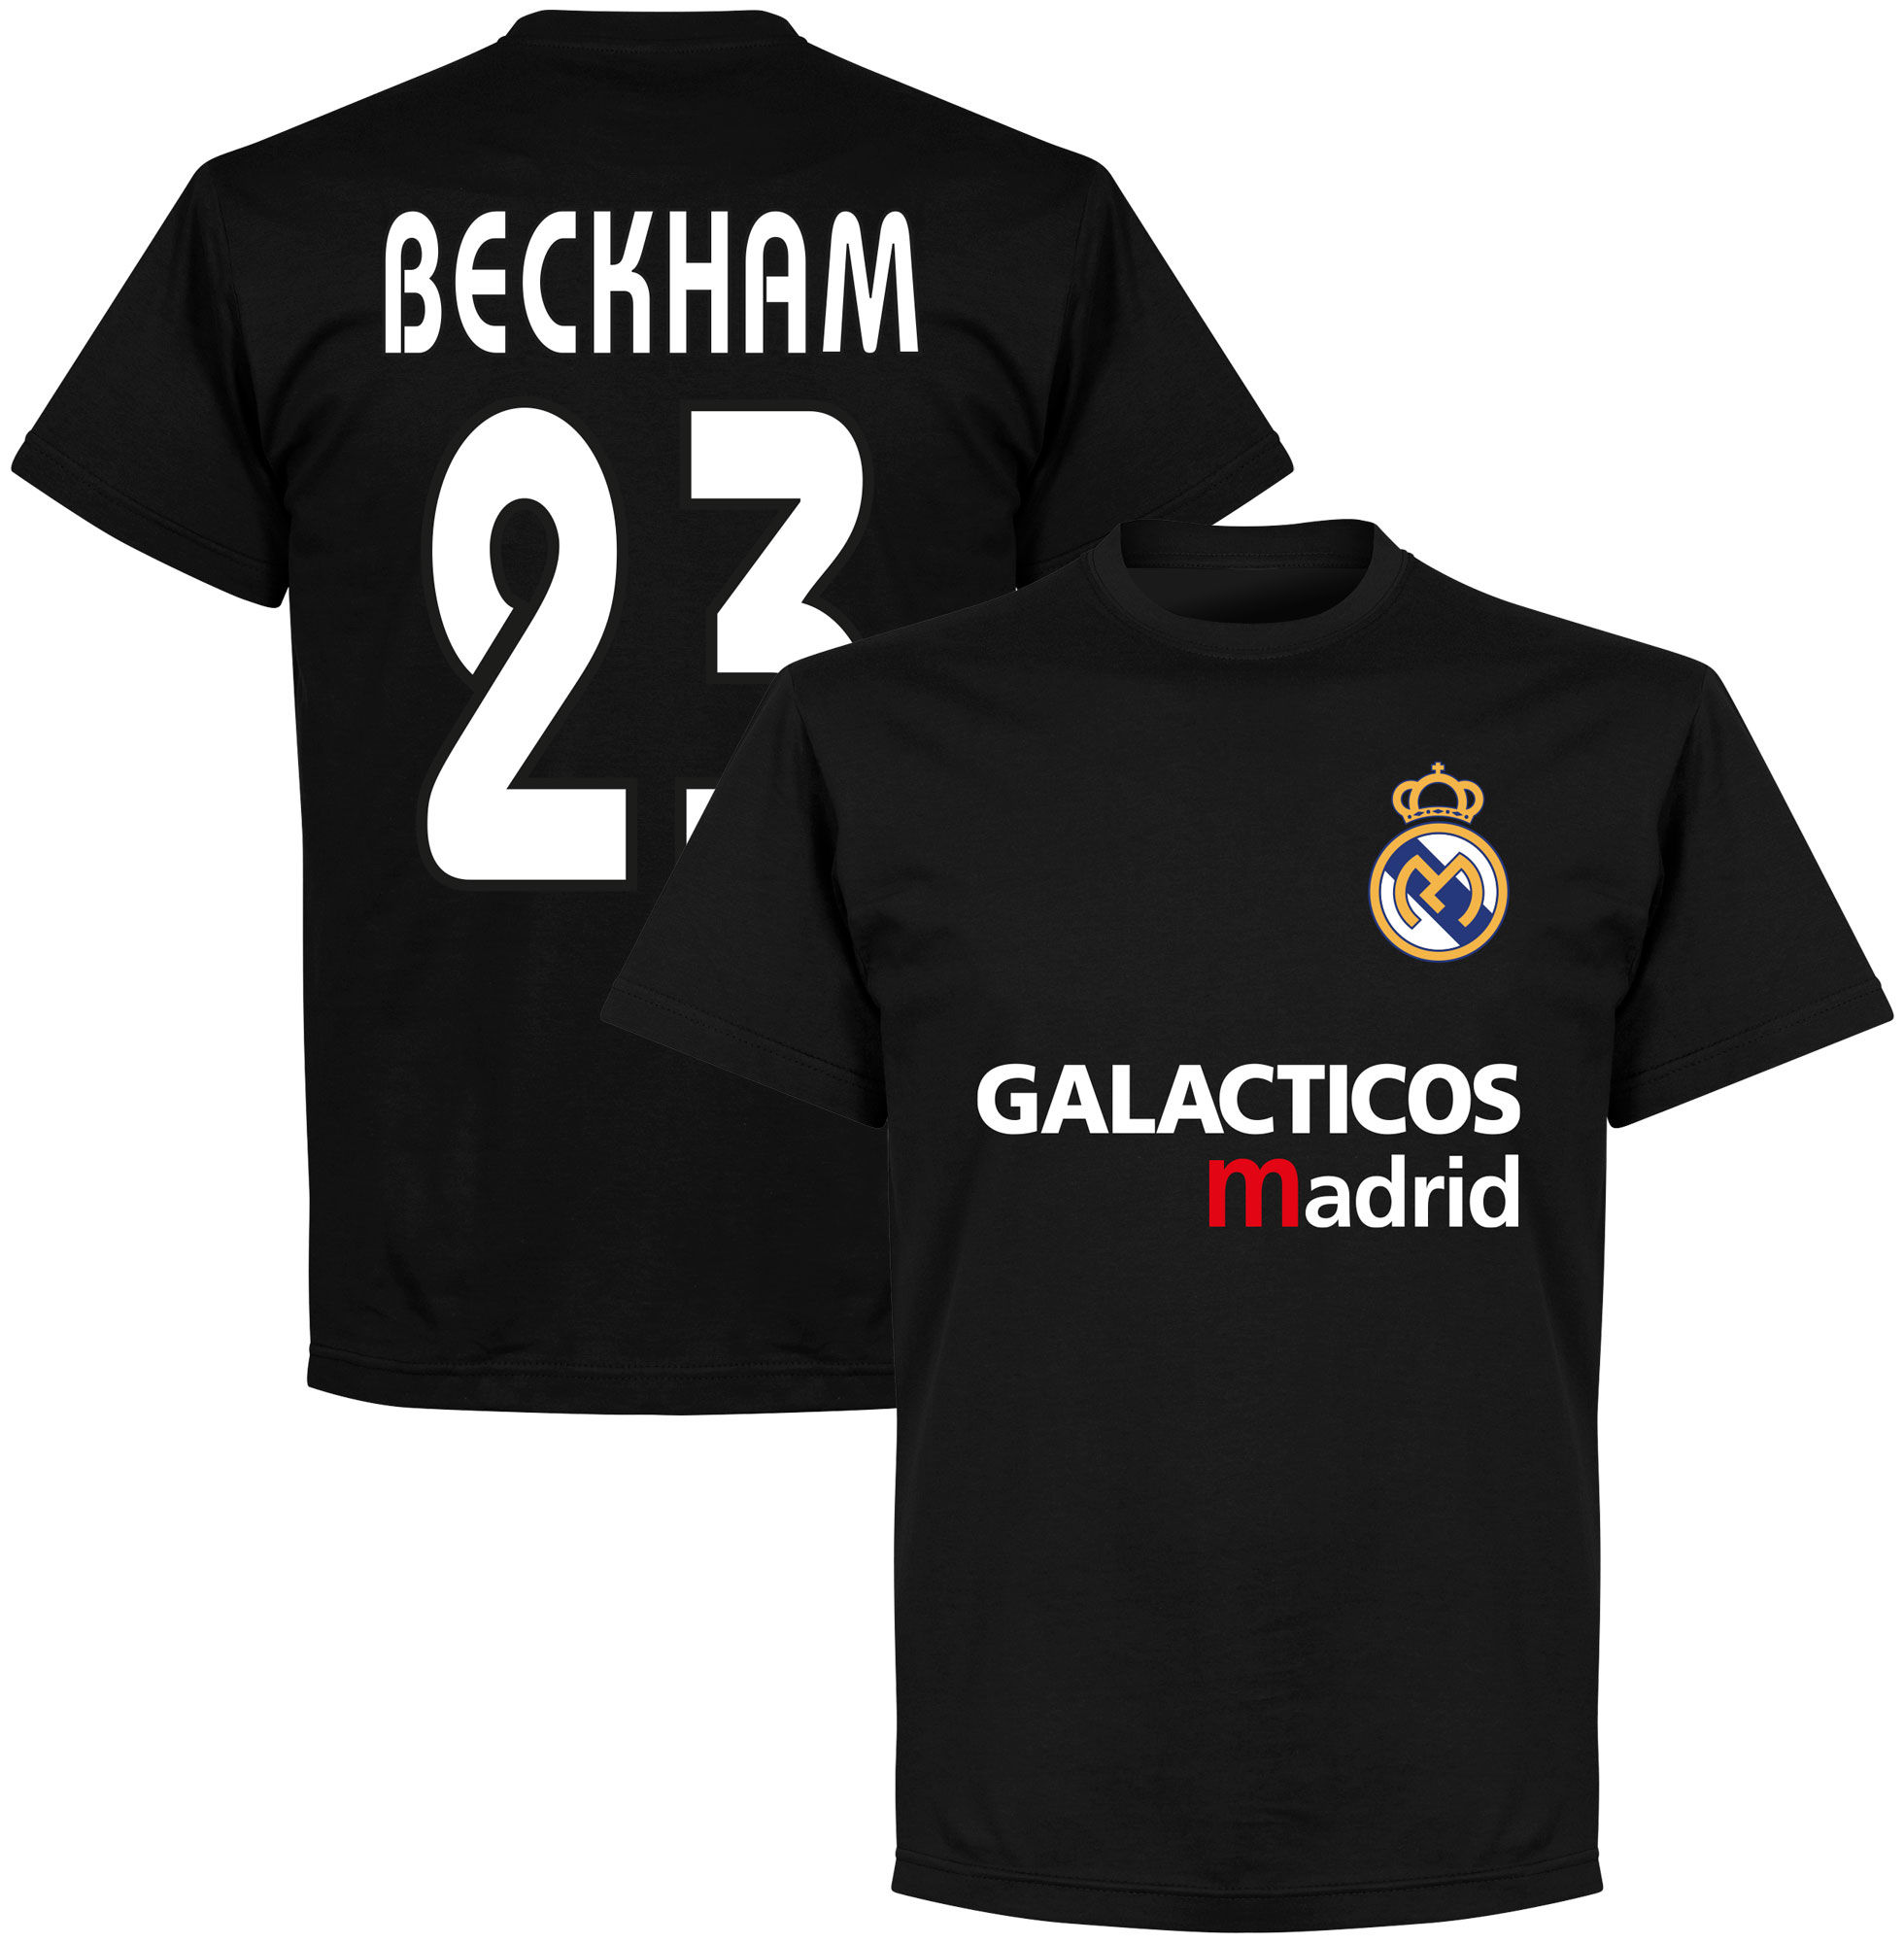 Real Madrid - Tričko "Galácticos Madrid" - číslo 23, David Beckham, černé